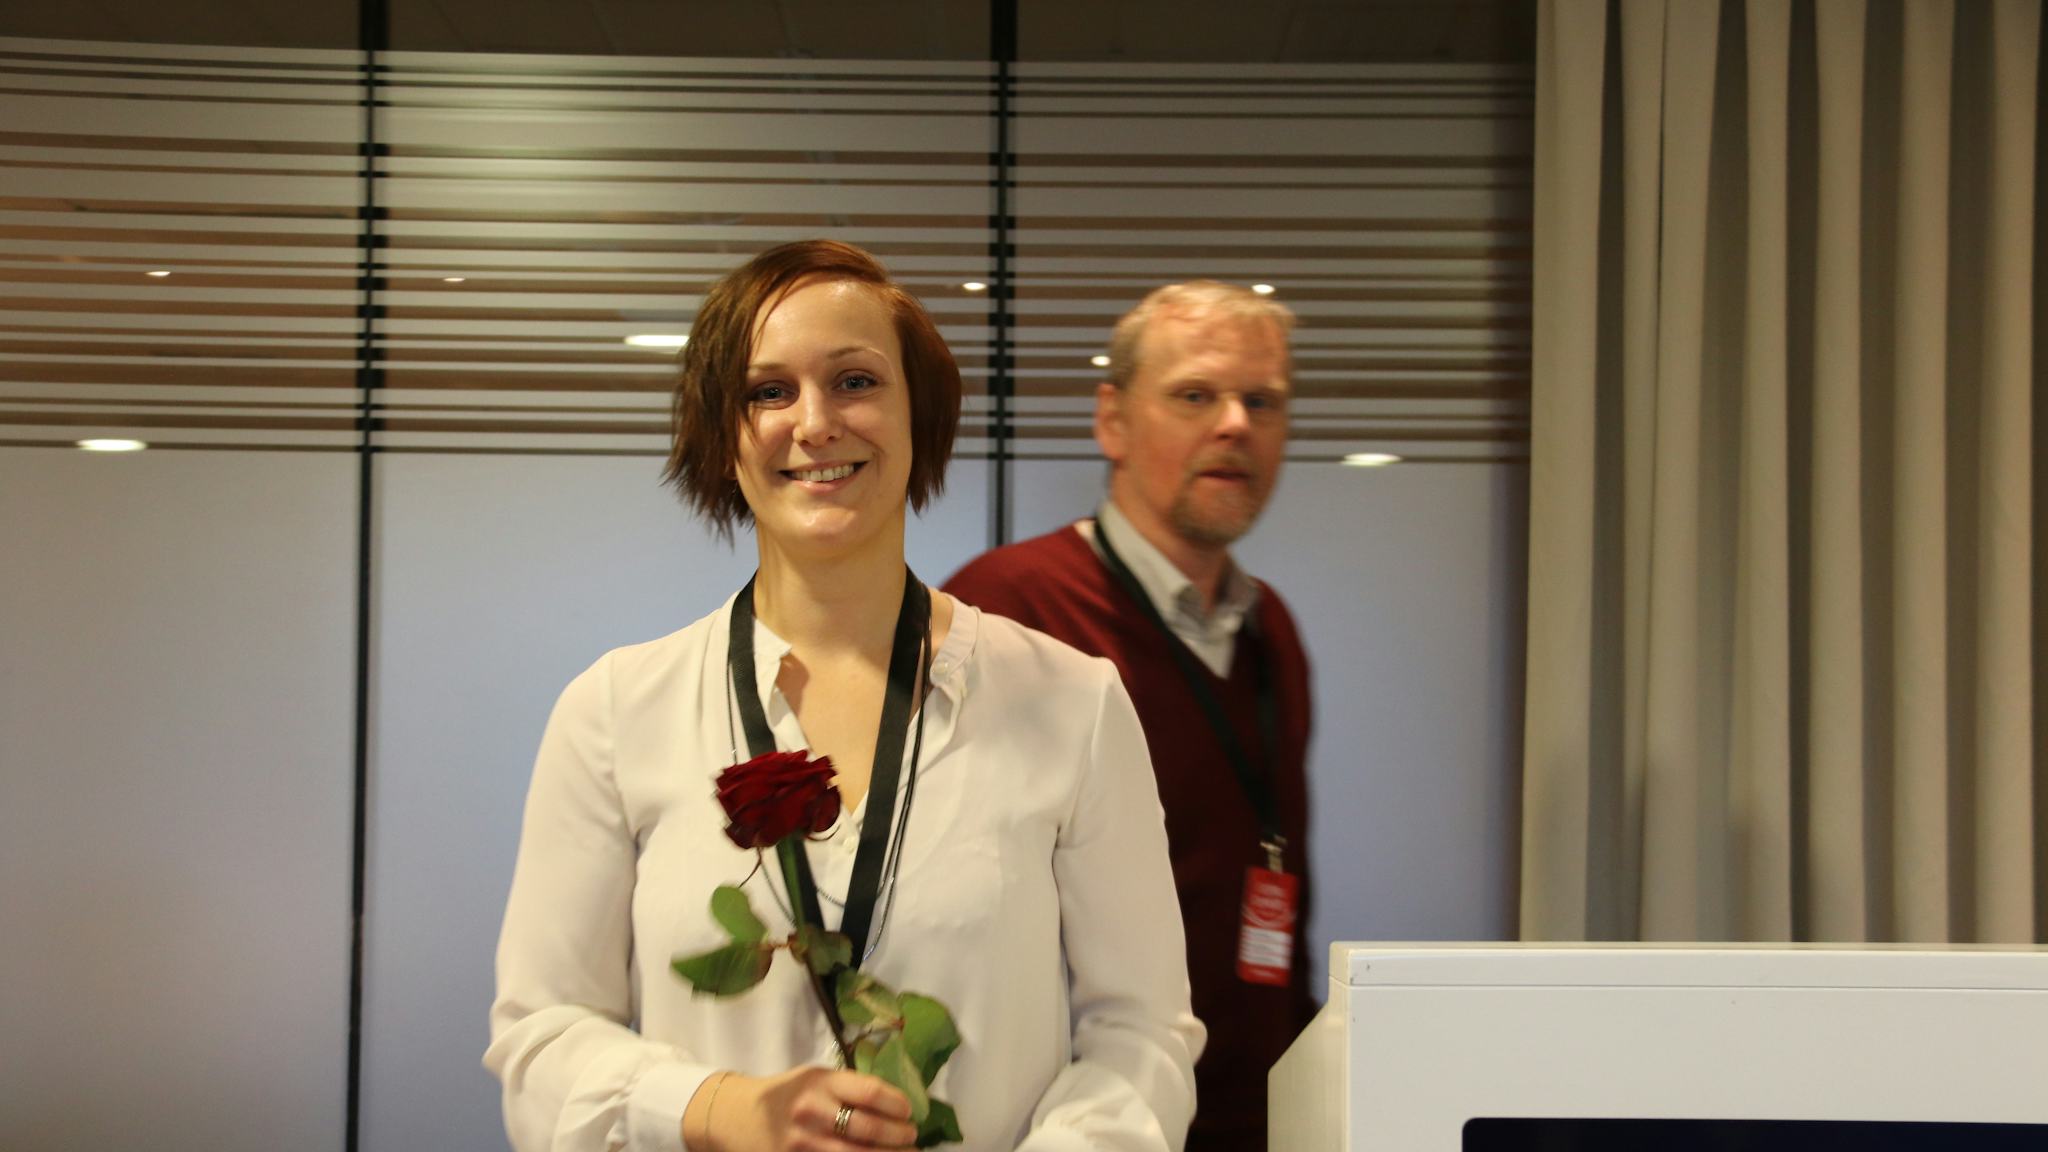 Louise Olsson leende med en ros i händerna.